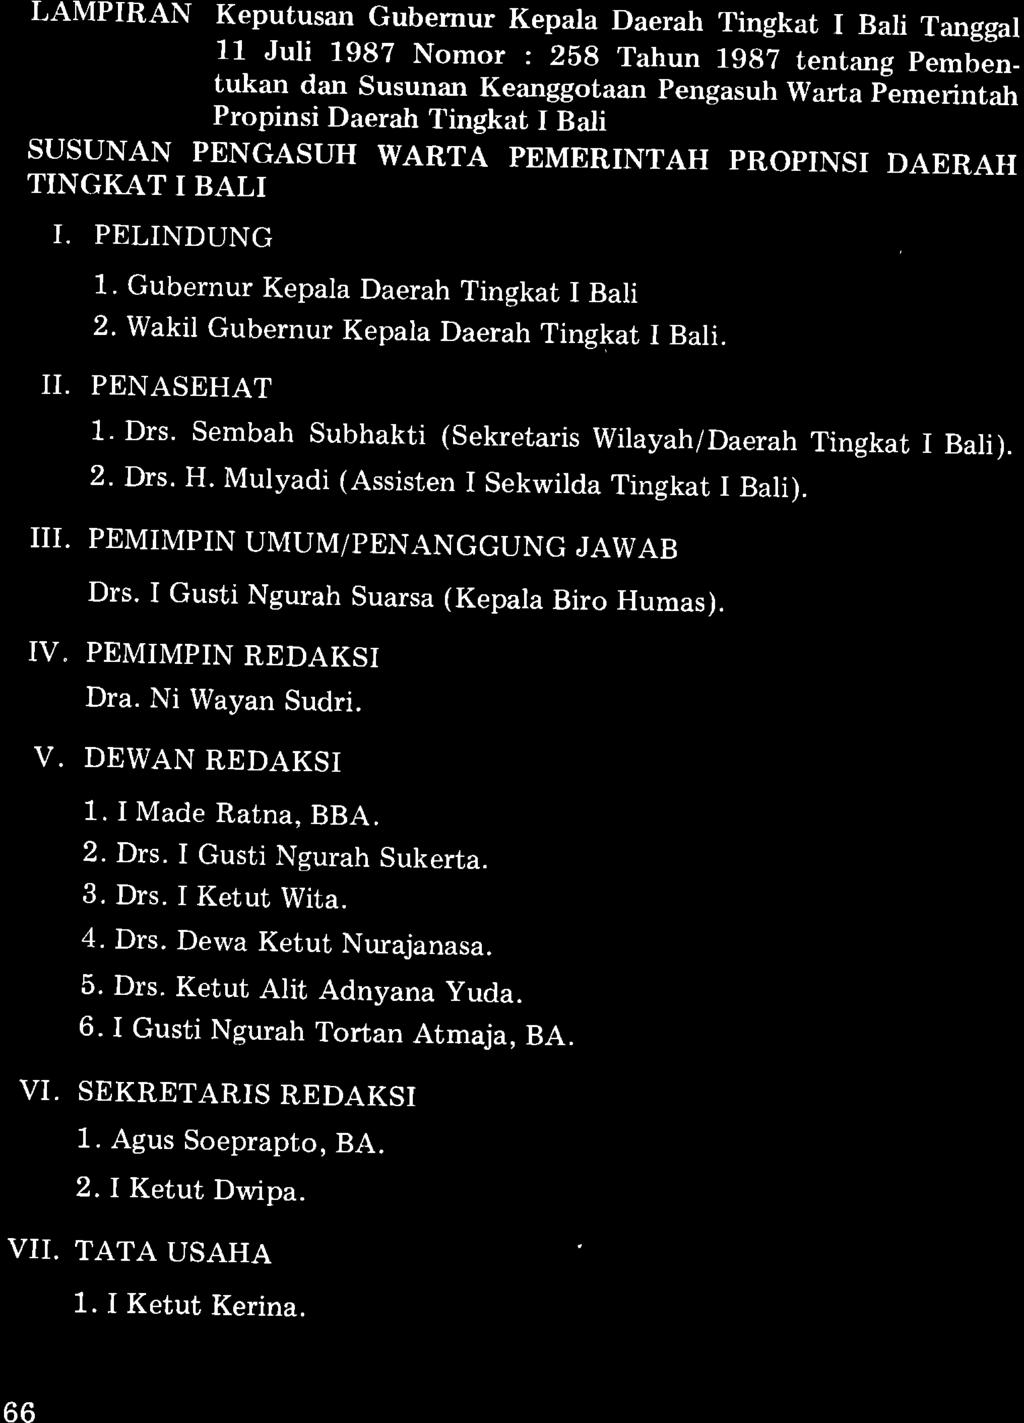 LAMPIRAN Keputusan Gubernur Kepala Daerah Tingkat I Bali Tanggal 11 Juli 1982 Nomor : 2bg Tahun 19gz tentang pembentukan dan susunan Keanggotaan pengasuh warta plmerintah Propinsi Daerah Tingkat I